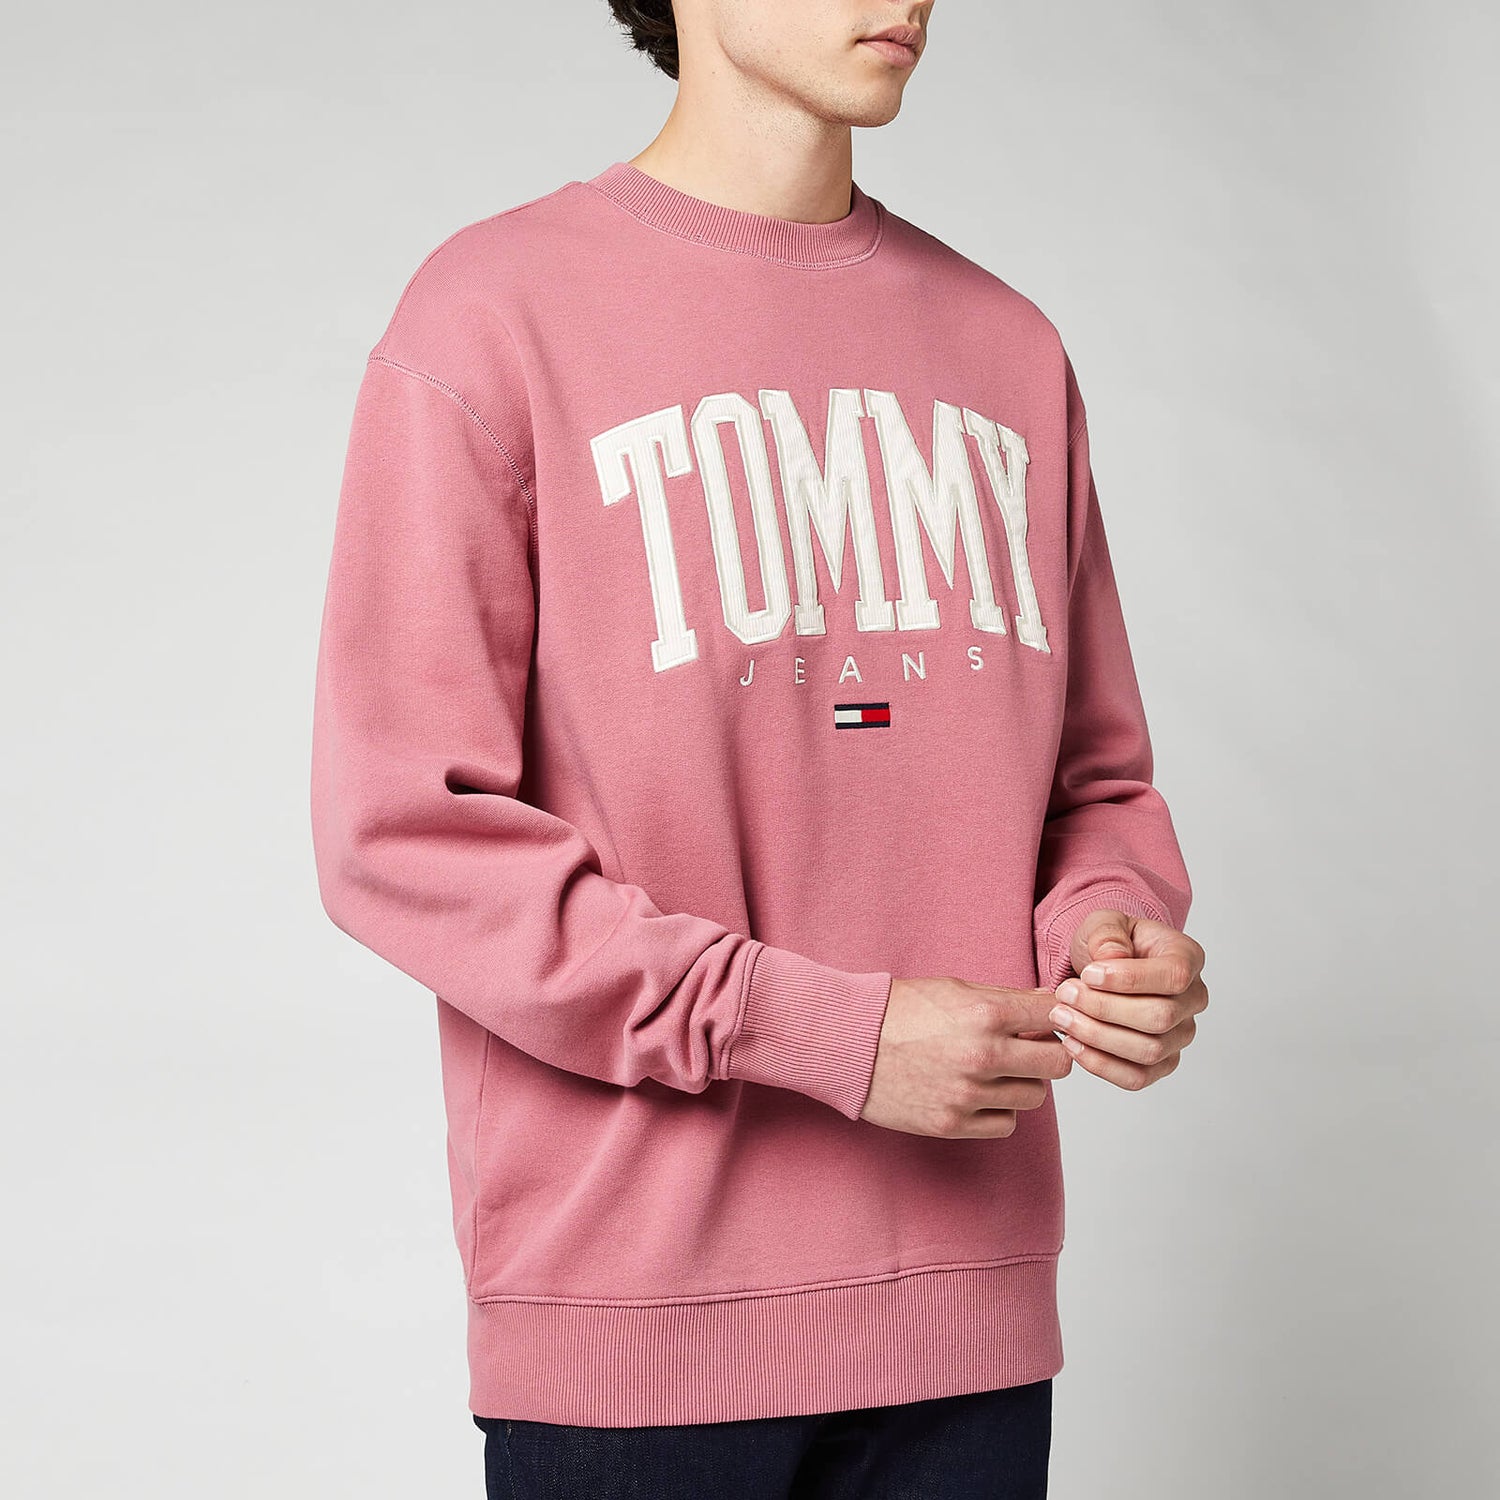 Tommy Jeans Men's Collegiate Crewneck Sweatshirt - Moss Rose